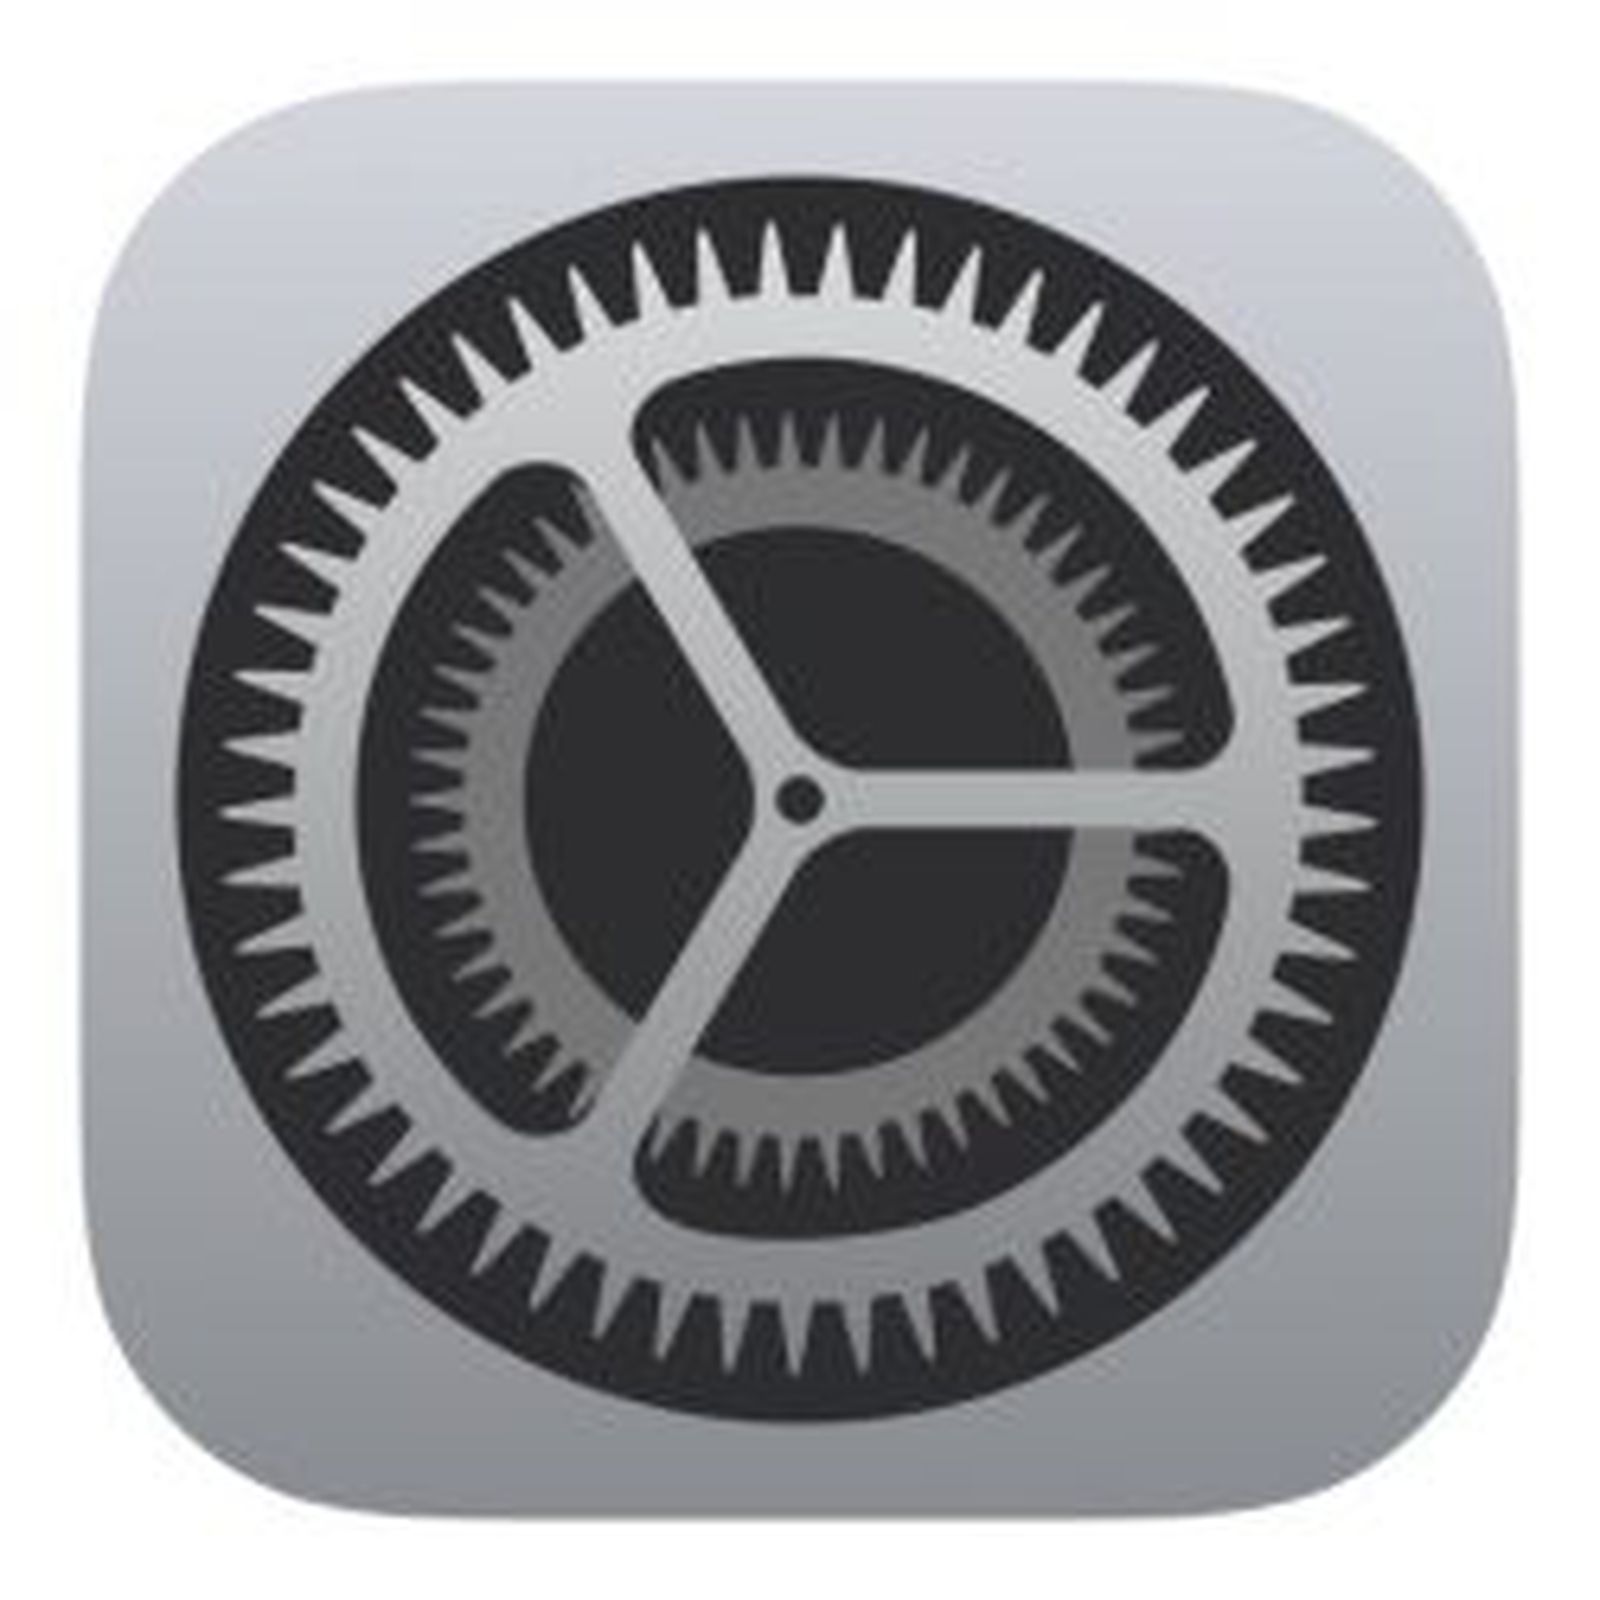 apple-settings-icon-19.jpg-250x250__1_.jpg